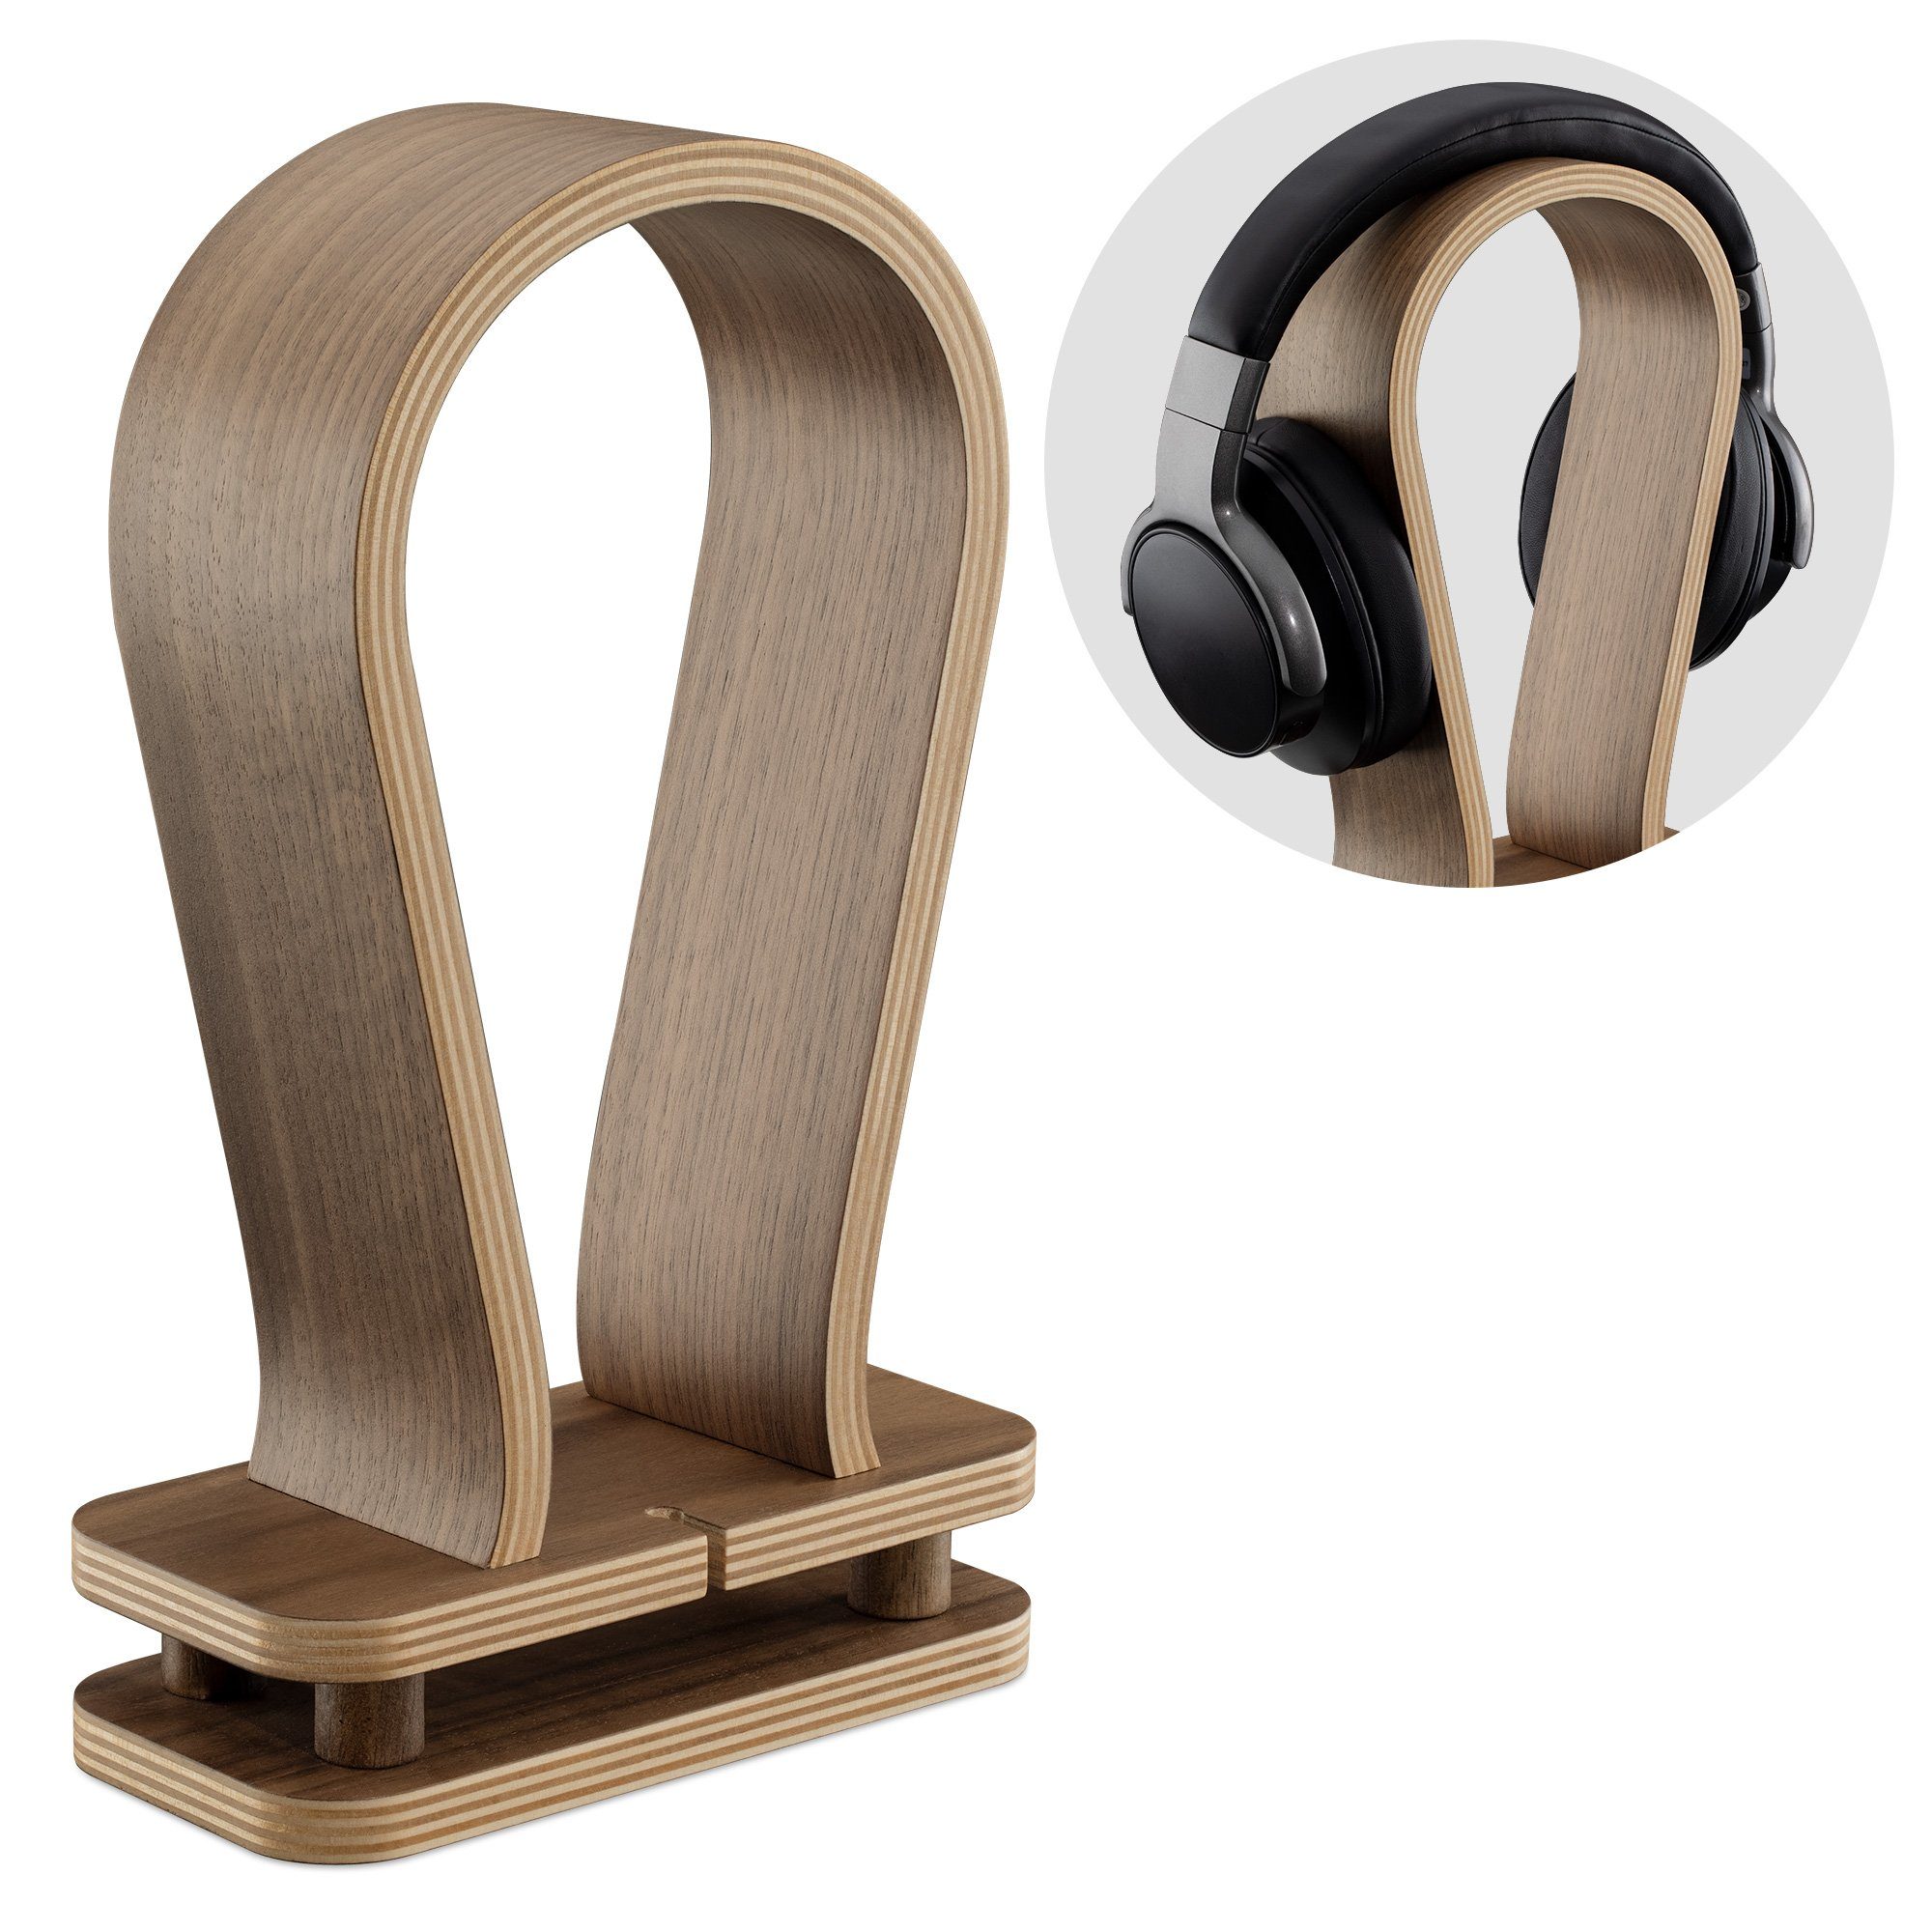 Navaris Kopfhörerständer, (Universal Holz Kopfhörerhalter mit Kabelhalterung - Kopfhörer Halter Headset Halterung - Headphone Stand - Walnussholz)